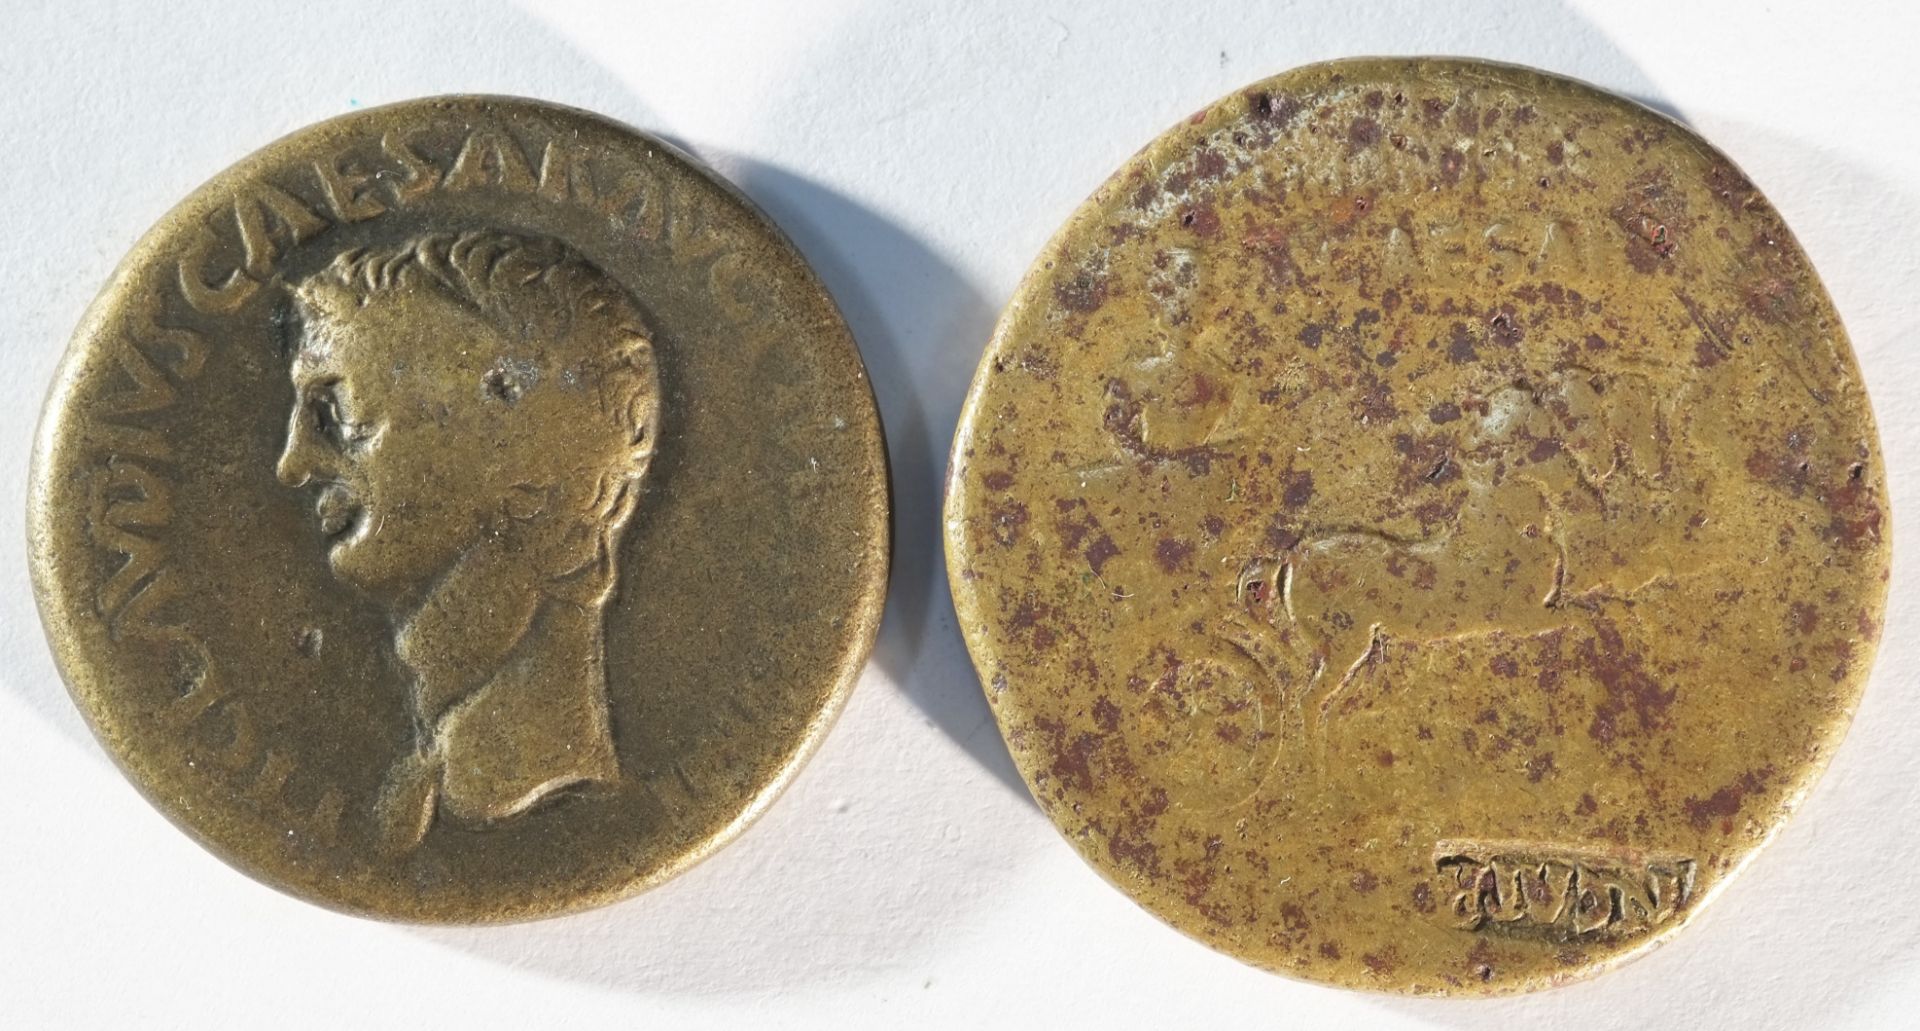 2x Julio-Claudian coins consisting of: Caligula (37 - 41 CE) brass dupondius - Bild 2 aus 2